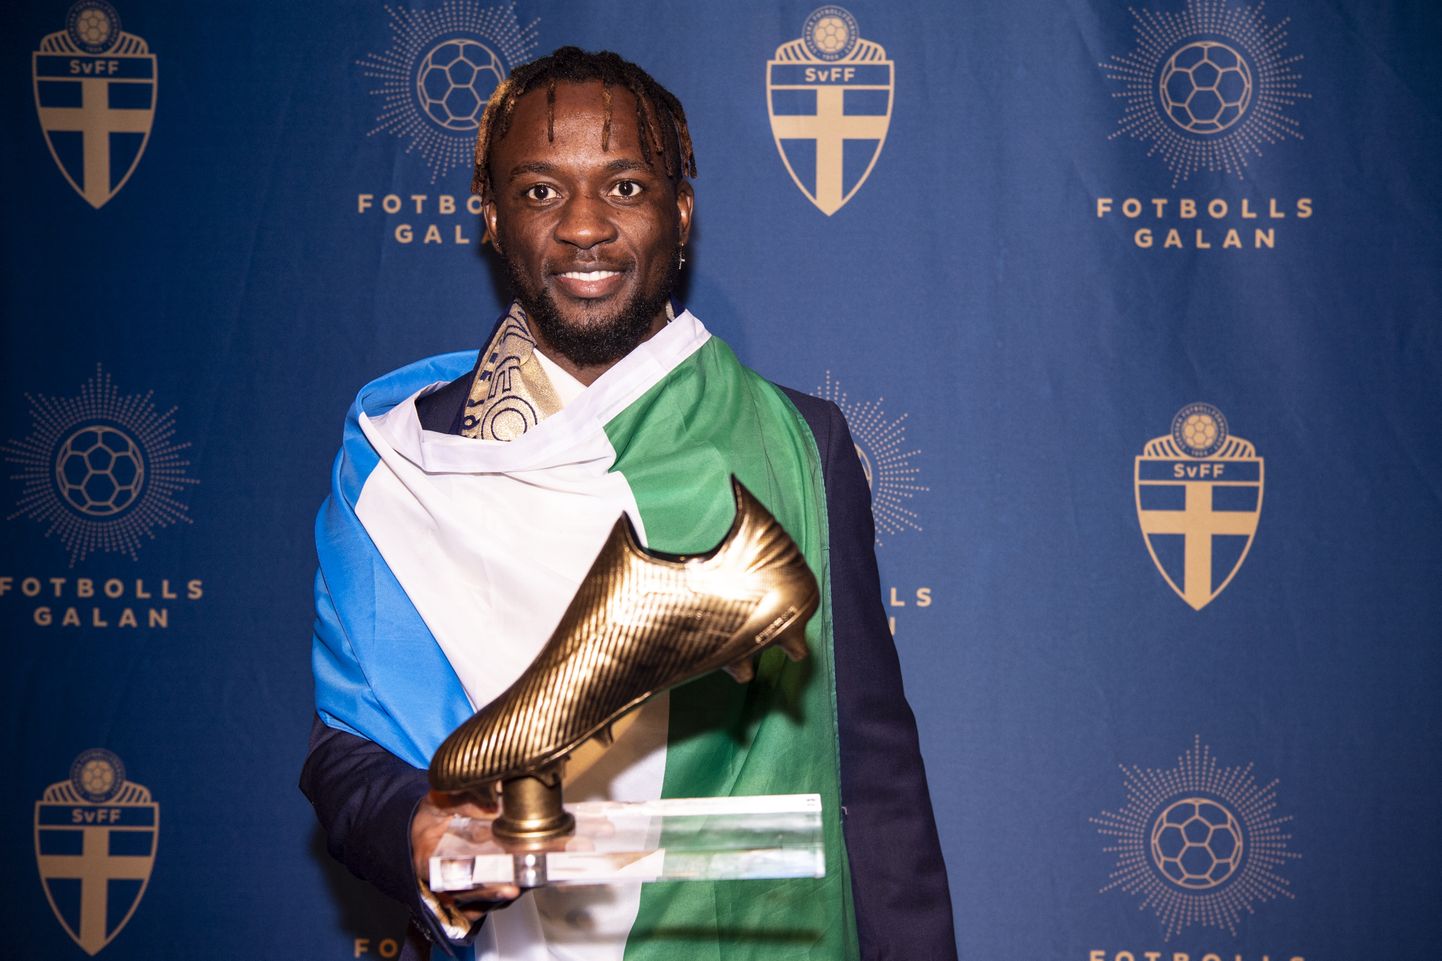 Sierra Leone päritolu jalgpallur Mohamed Buya Turay 11. novembril 2019 Rootsis Stockholmis jalgpalligalal, kus ta sai parima väravaküti auhinna